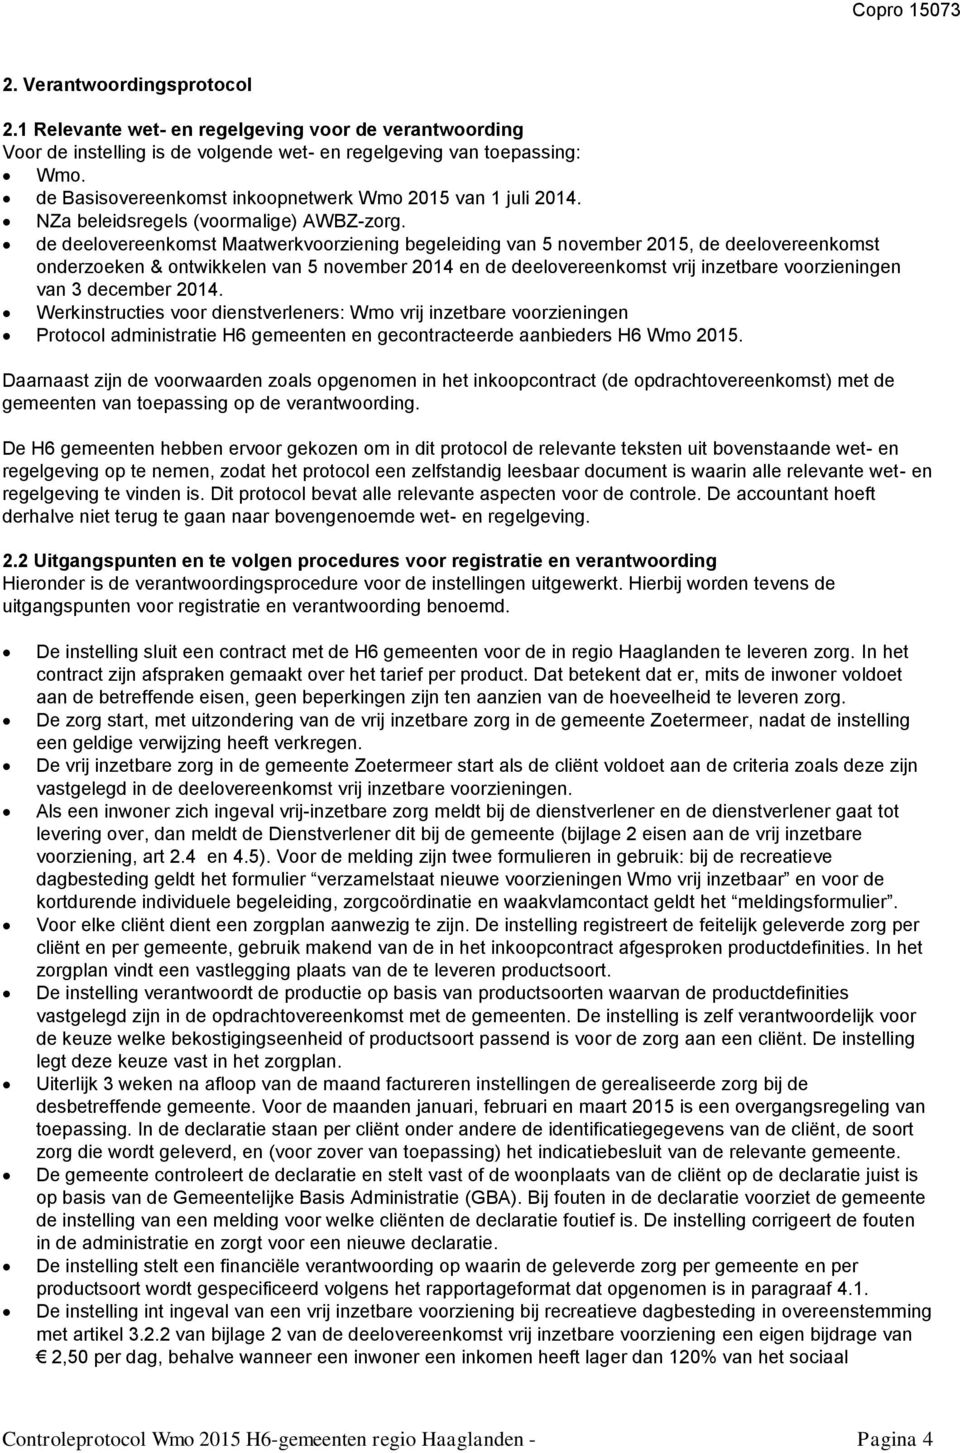 de deelovereenkomst Maatwerkvoorziening begeleiding van 5 november 2015, de deelovereenkomst onderzoeken & ontwikkelen van 5 november 2014 en de deelovereenkomst vrij inzetbare voorzieningen van 3